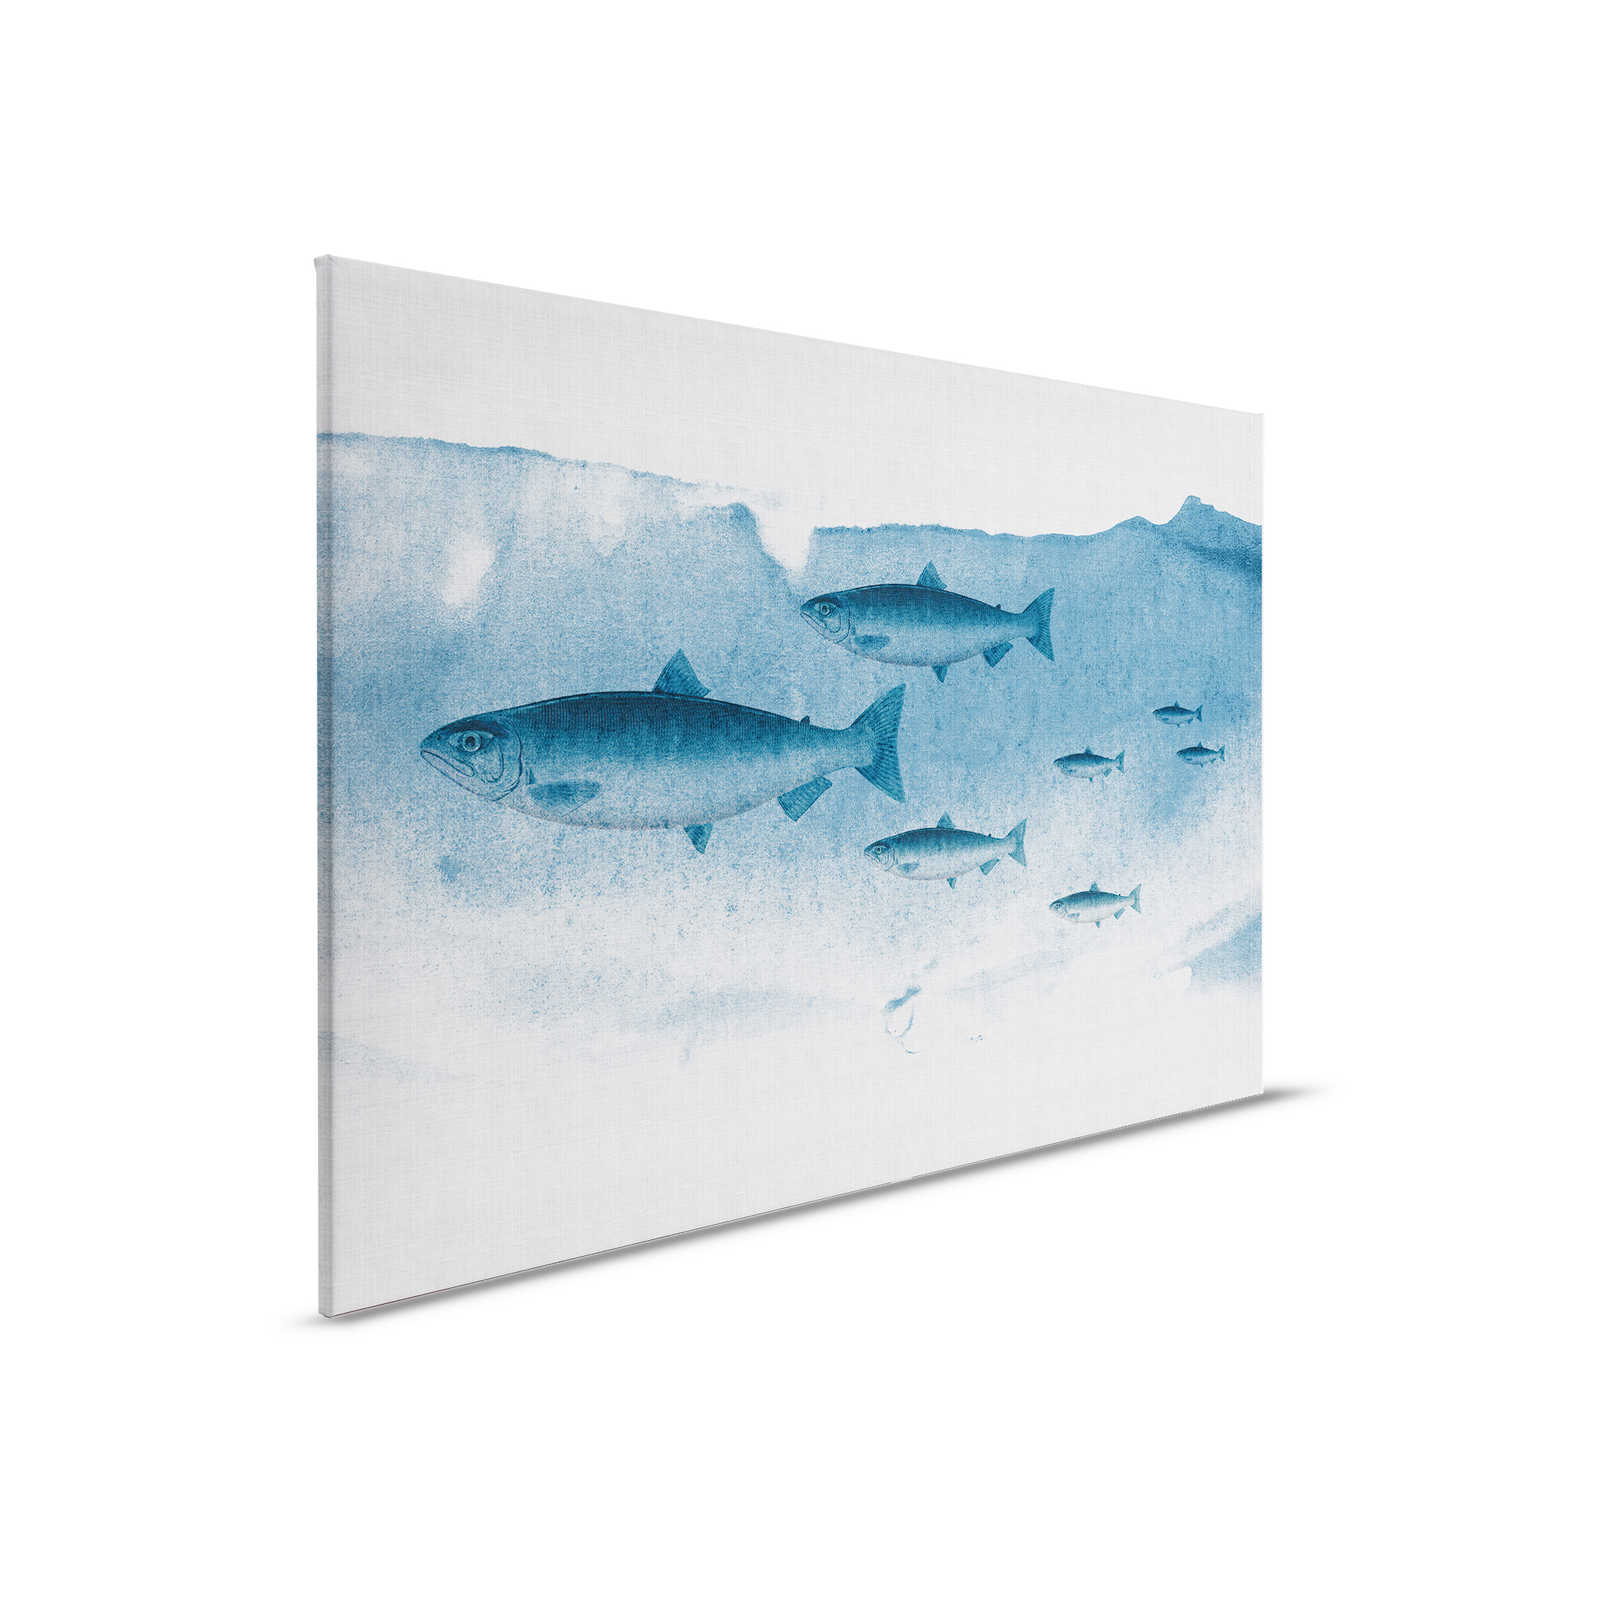 Into the blue 1 - Fisch Aquarell in Blau als Leinwandbild in naturleinen Struktur – 0,90 m x 0,60 m
